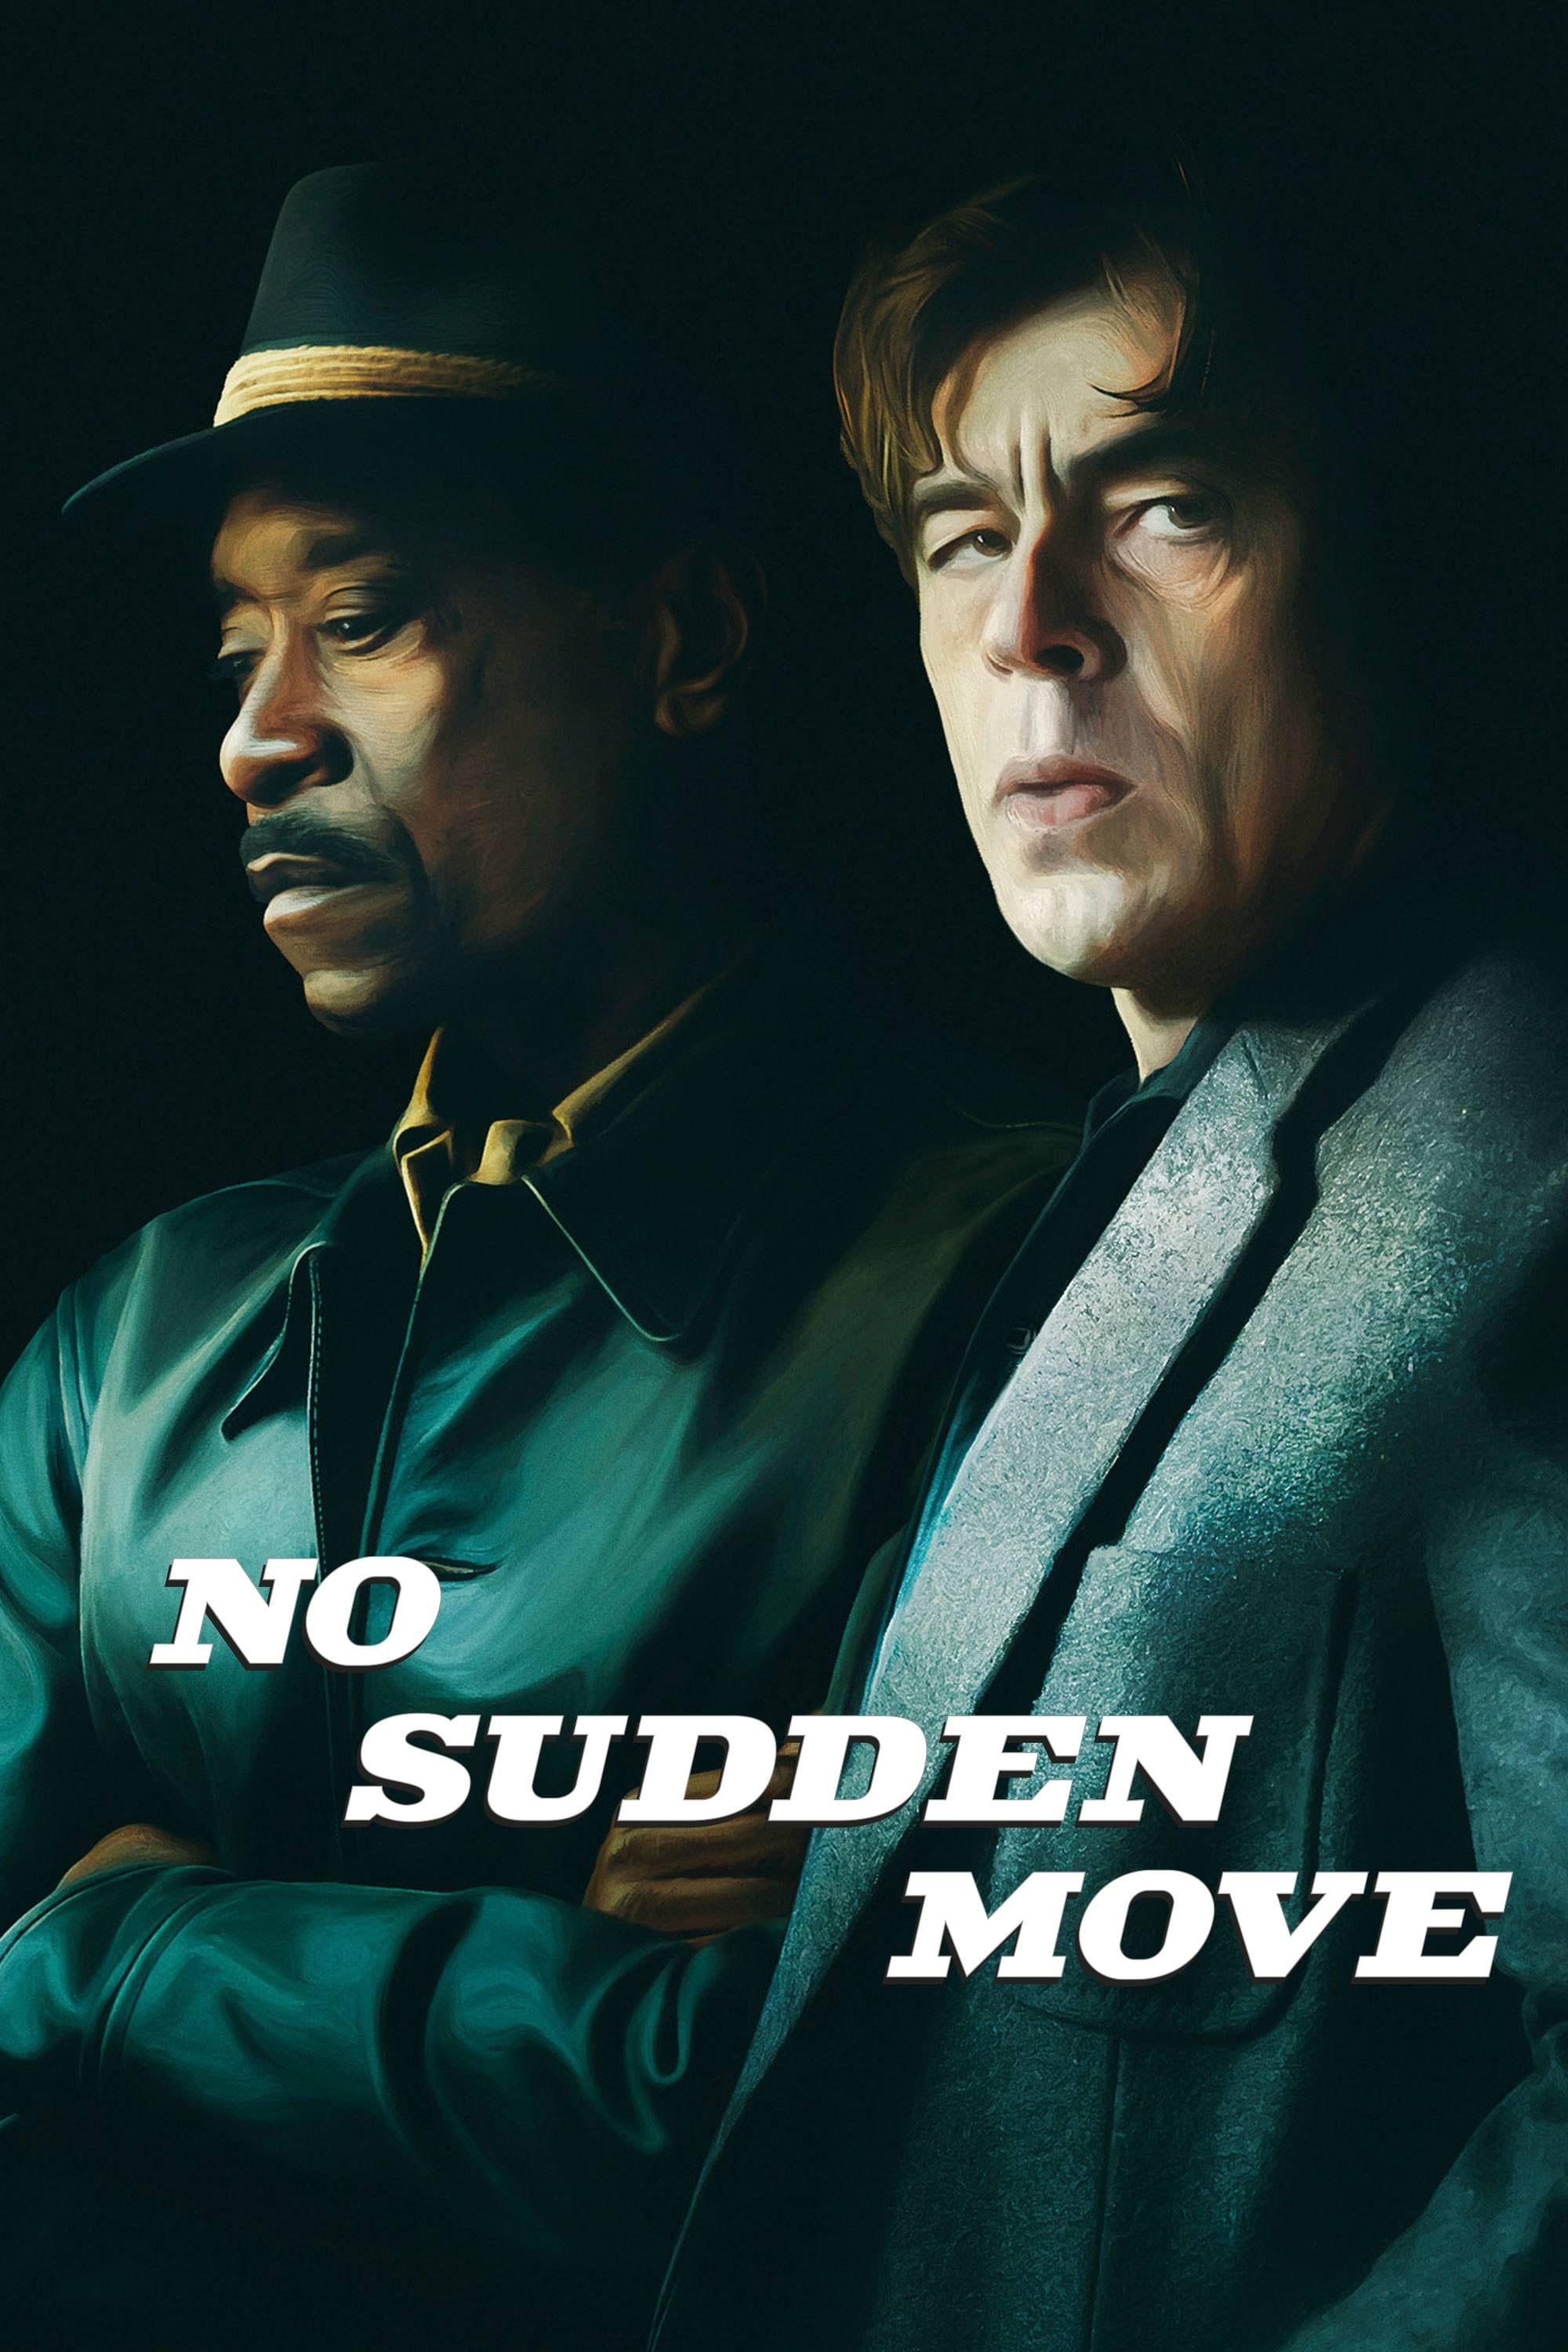 No Sudden Move poster